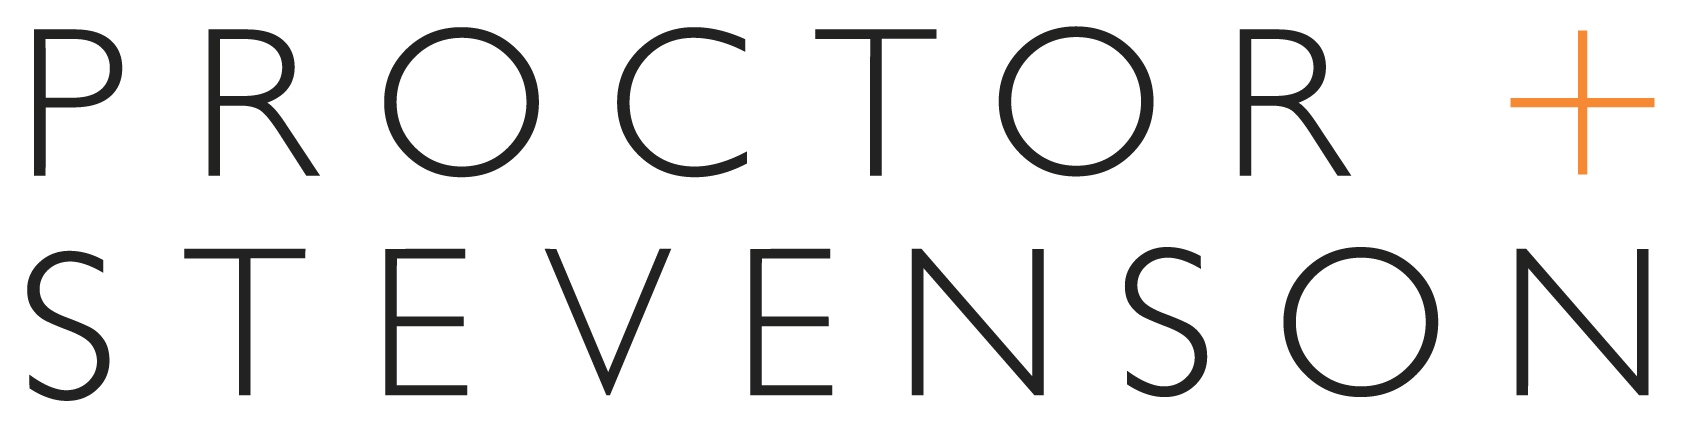 Proctor + Stevenson logo